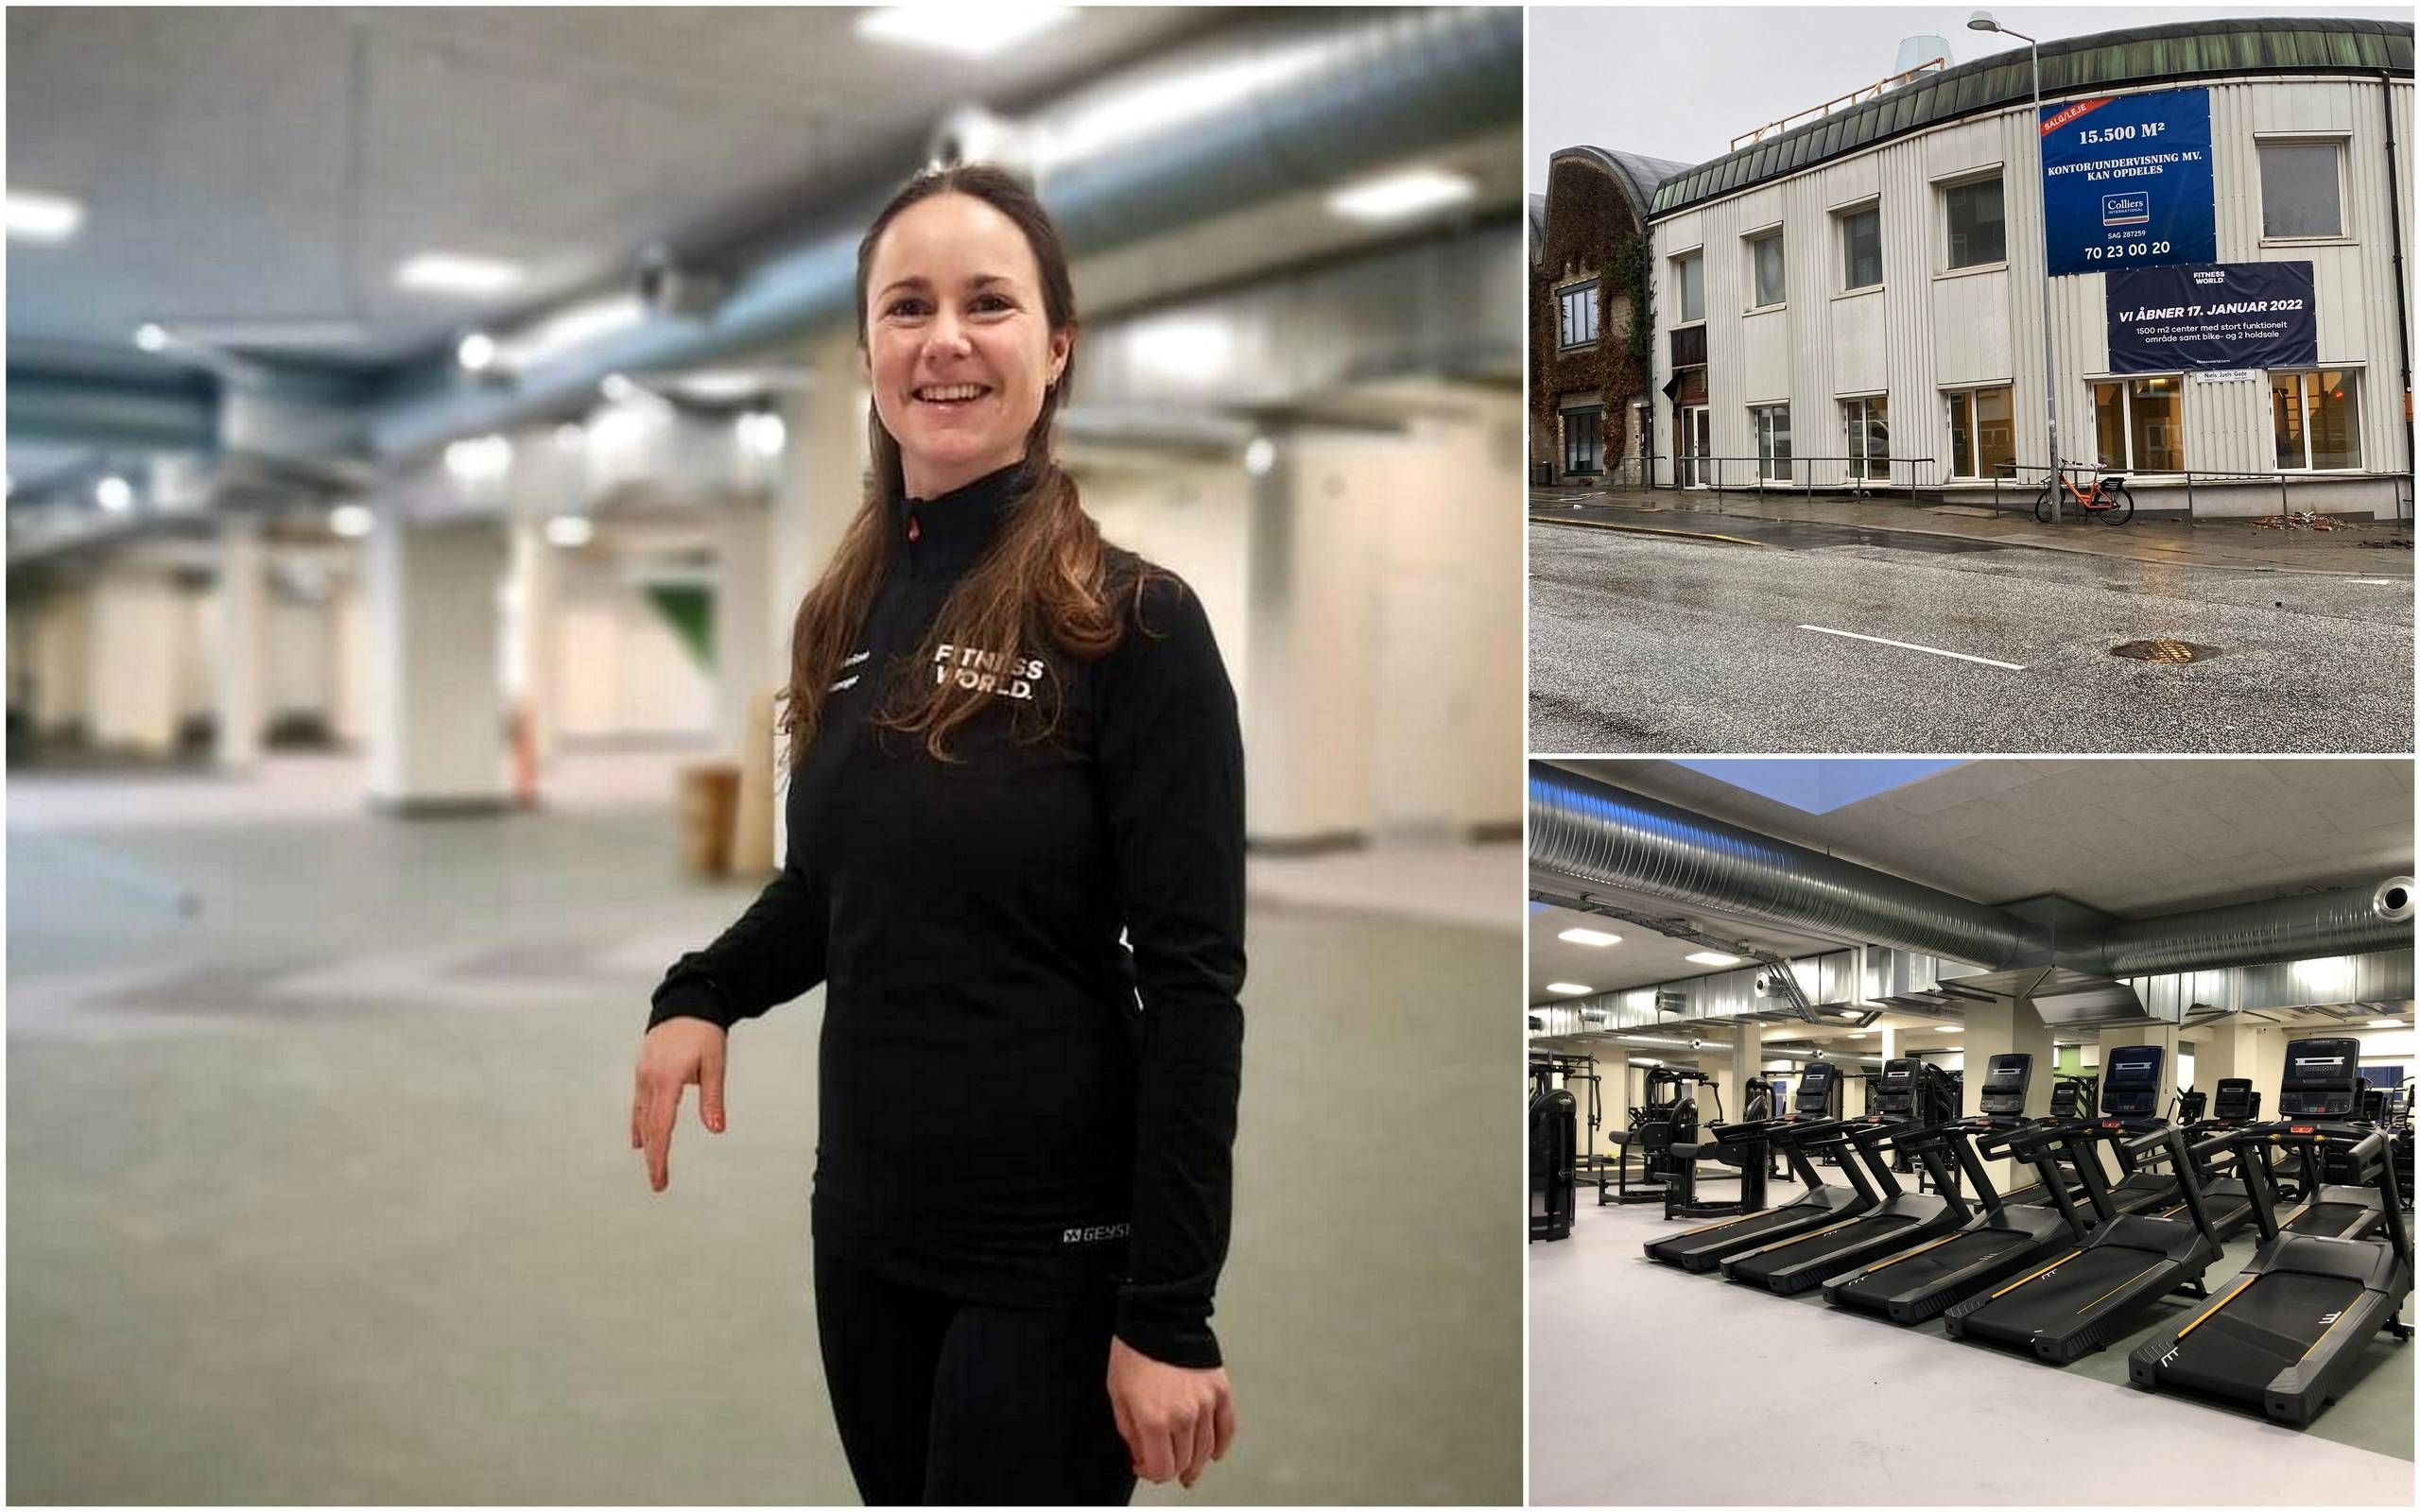 Fitness World i gamle universitetsbygninger Trøjborg